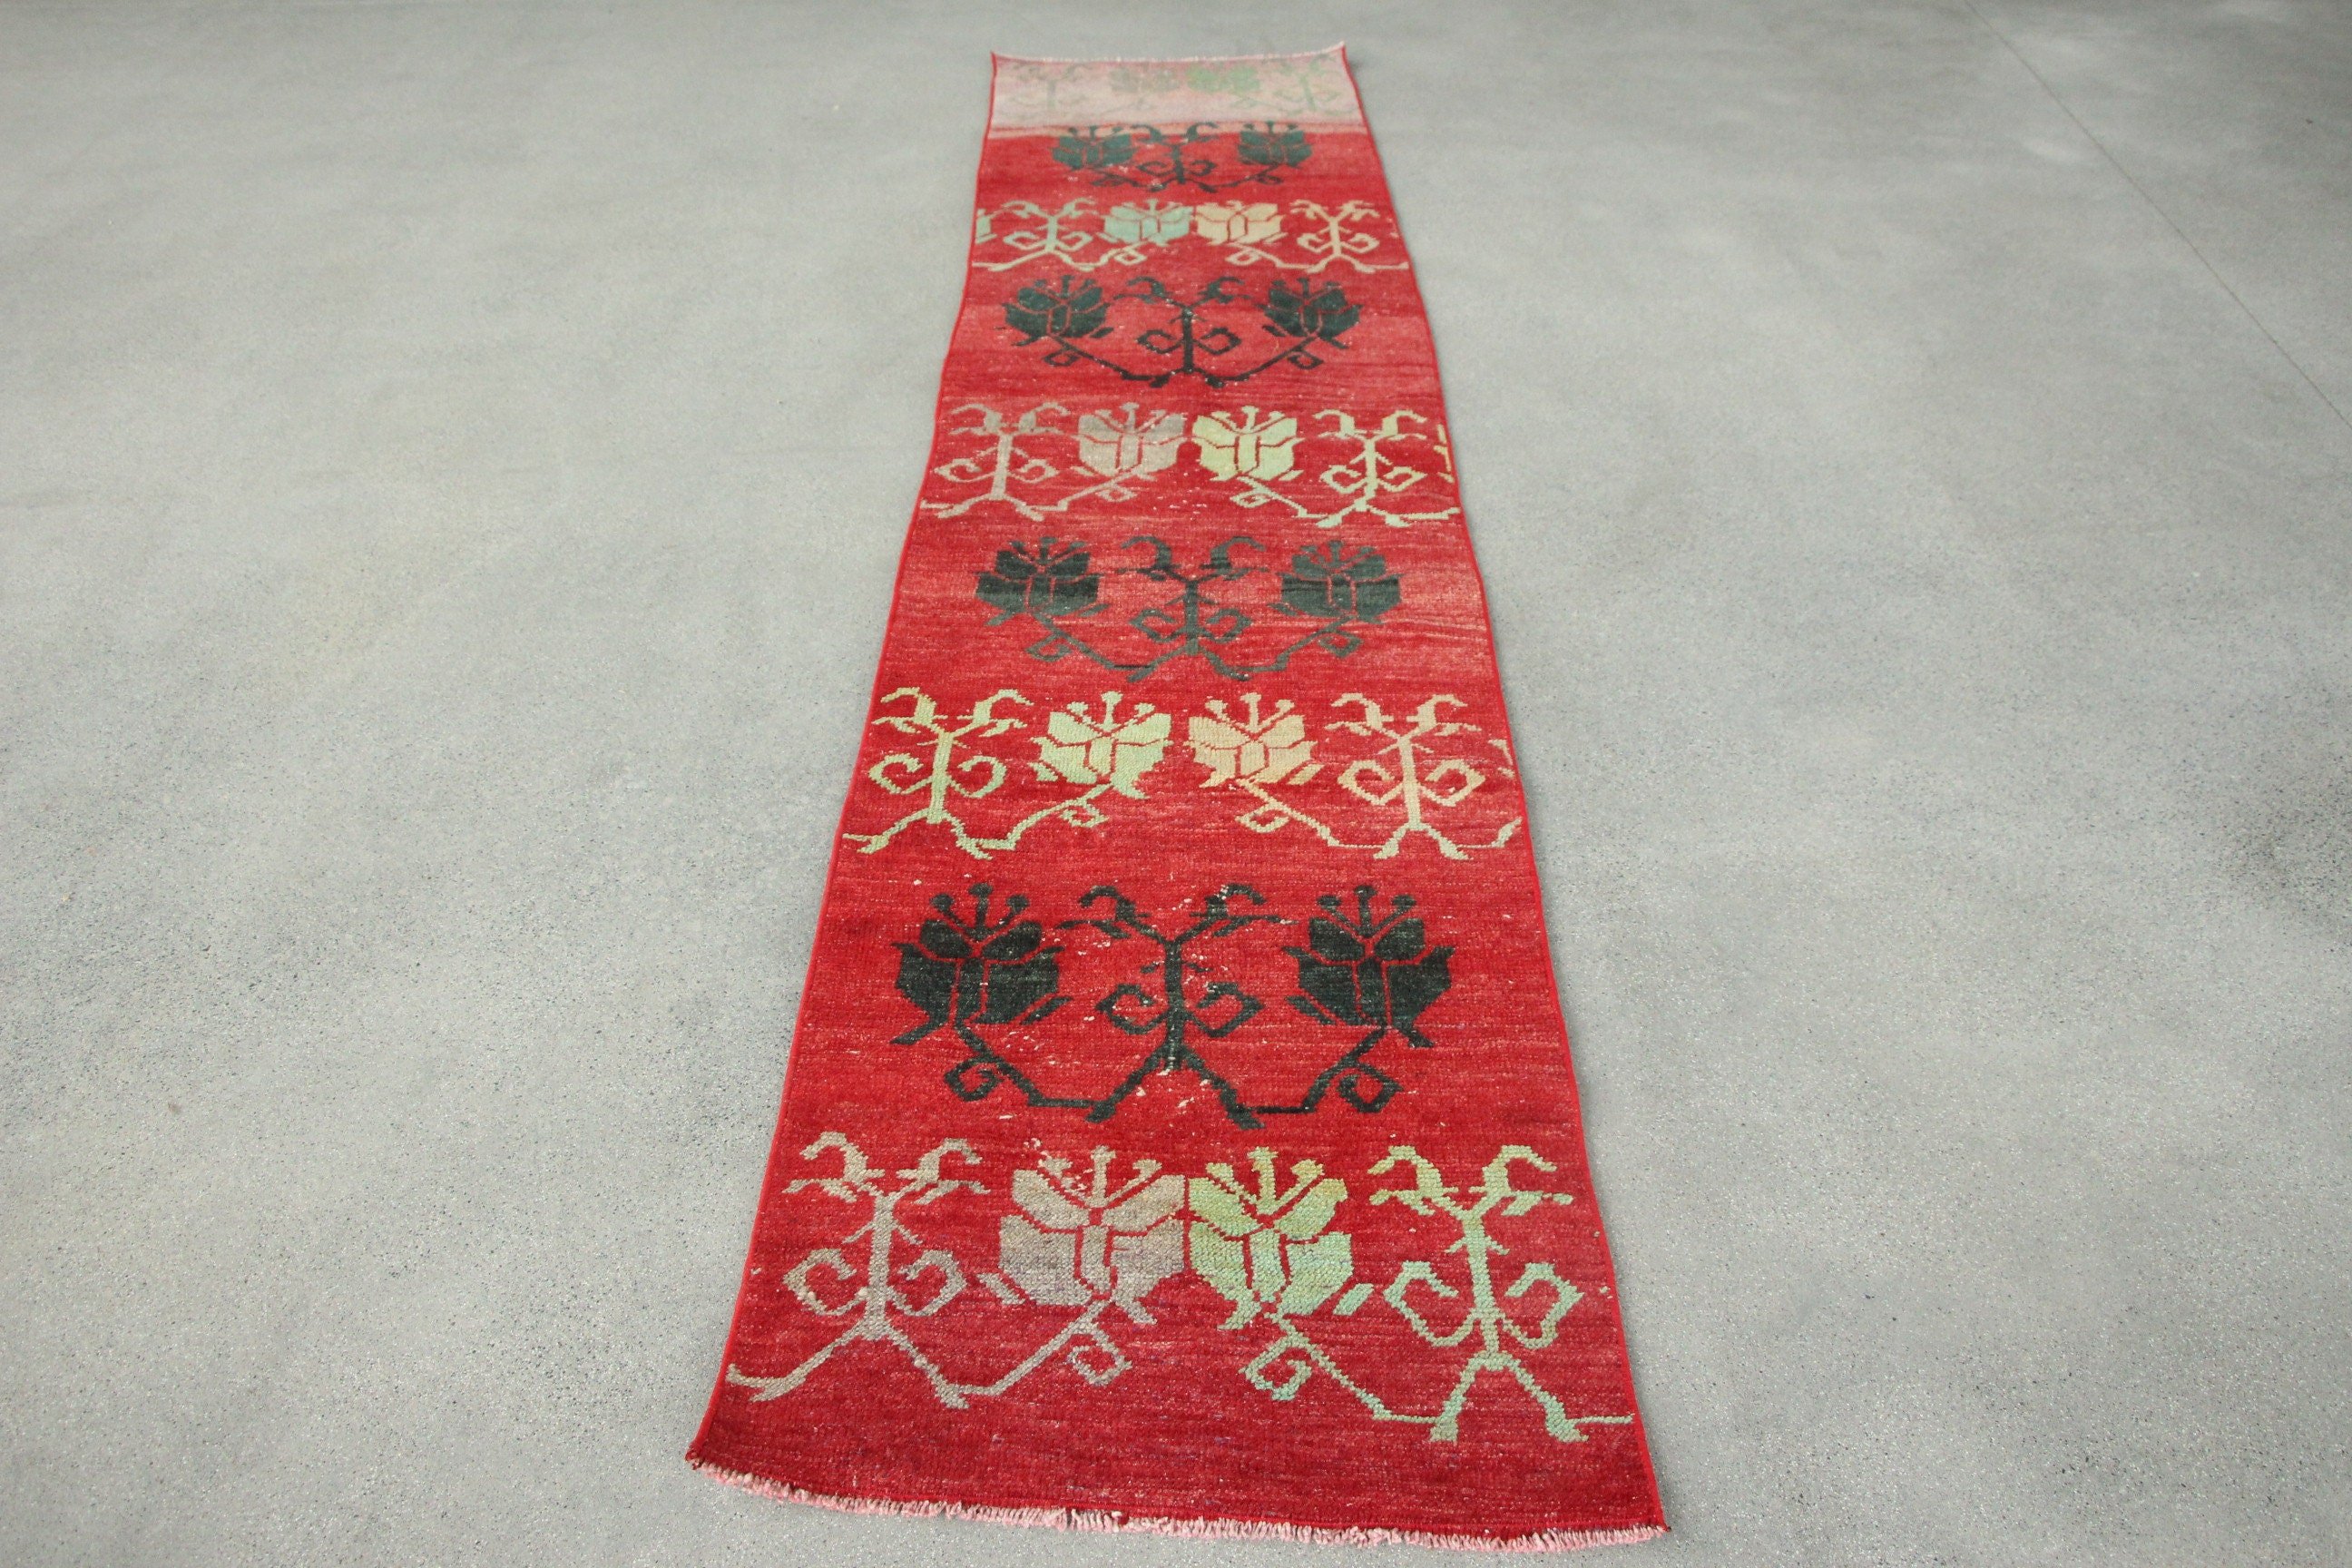 Turkish Rug, Oriental Rug, Stair Rug, Vintage Rug, Wool Rugs, Cute Rug, Rugs for Hallway, 2.2x9.9 ft Runner Rugs, Red Home Decor Rugs